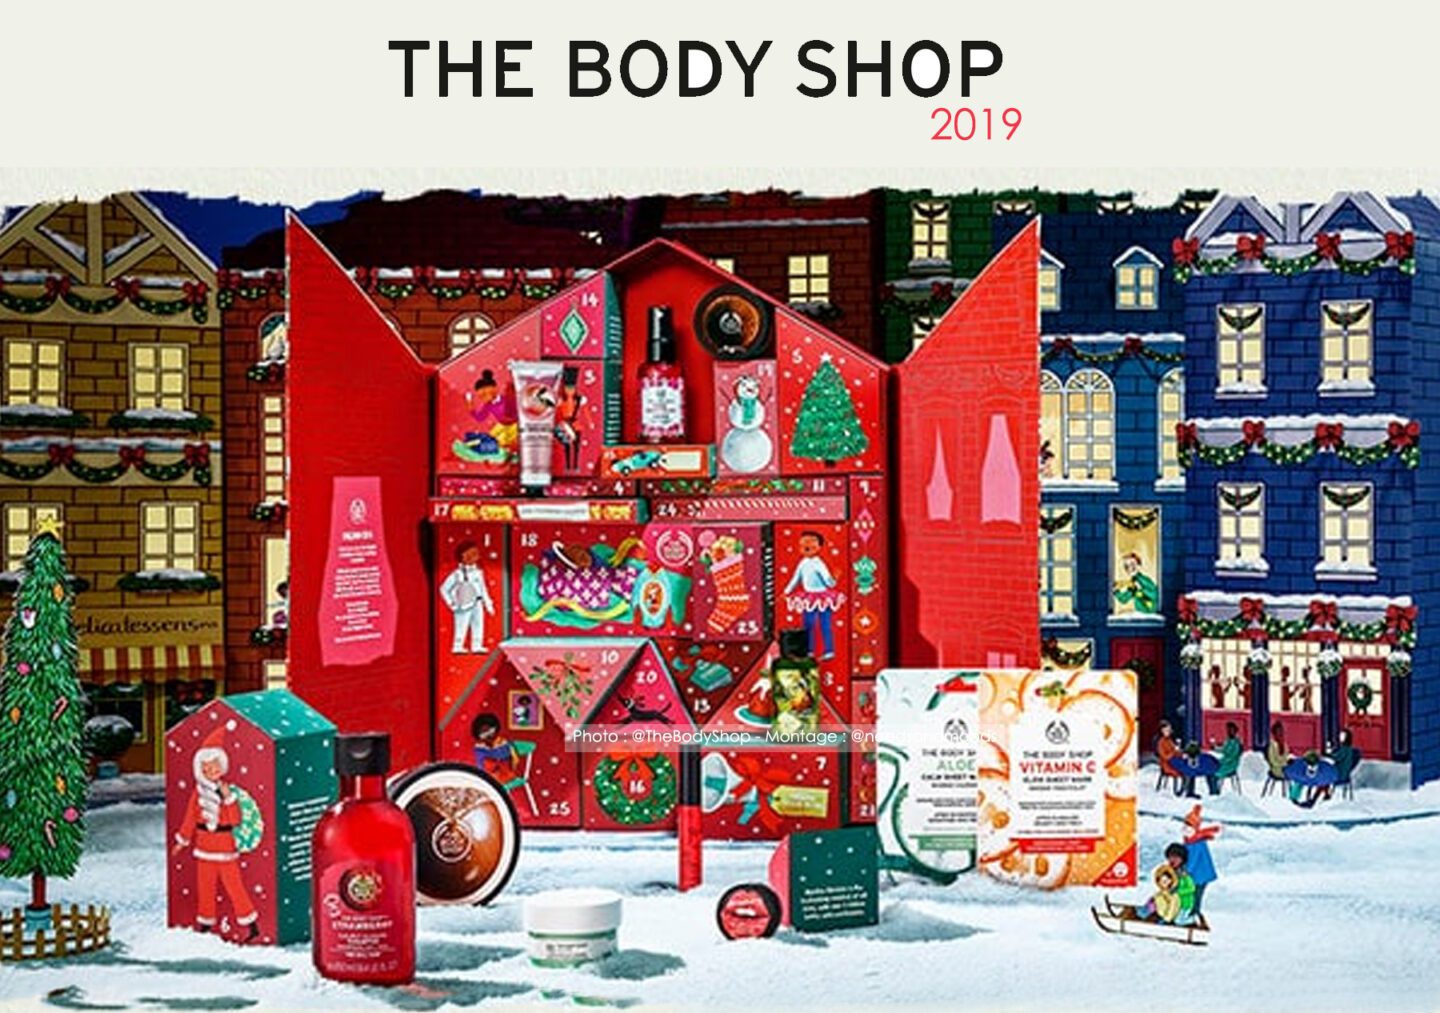 Calendrier de l'Avent The Body Shop 2019 : quel est son contenu ? (Spoiler)